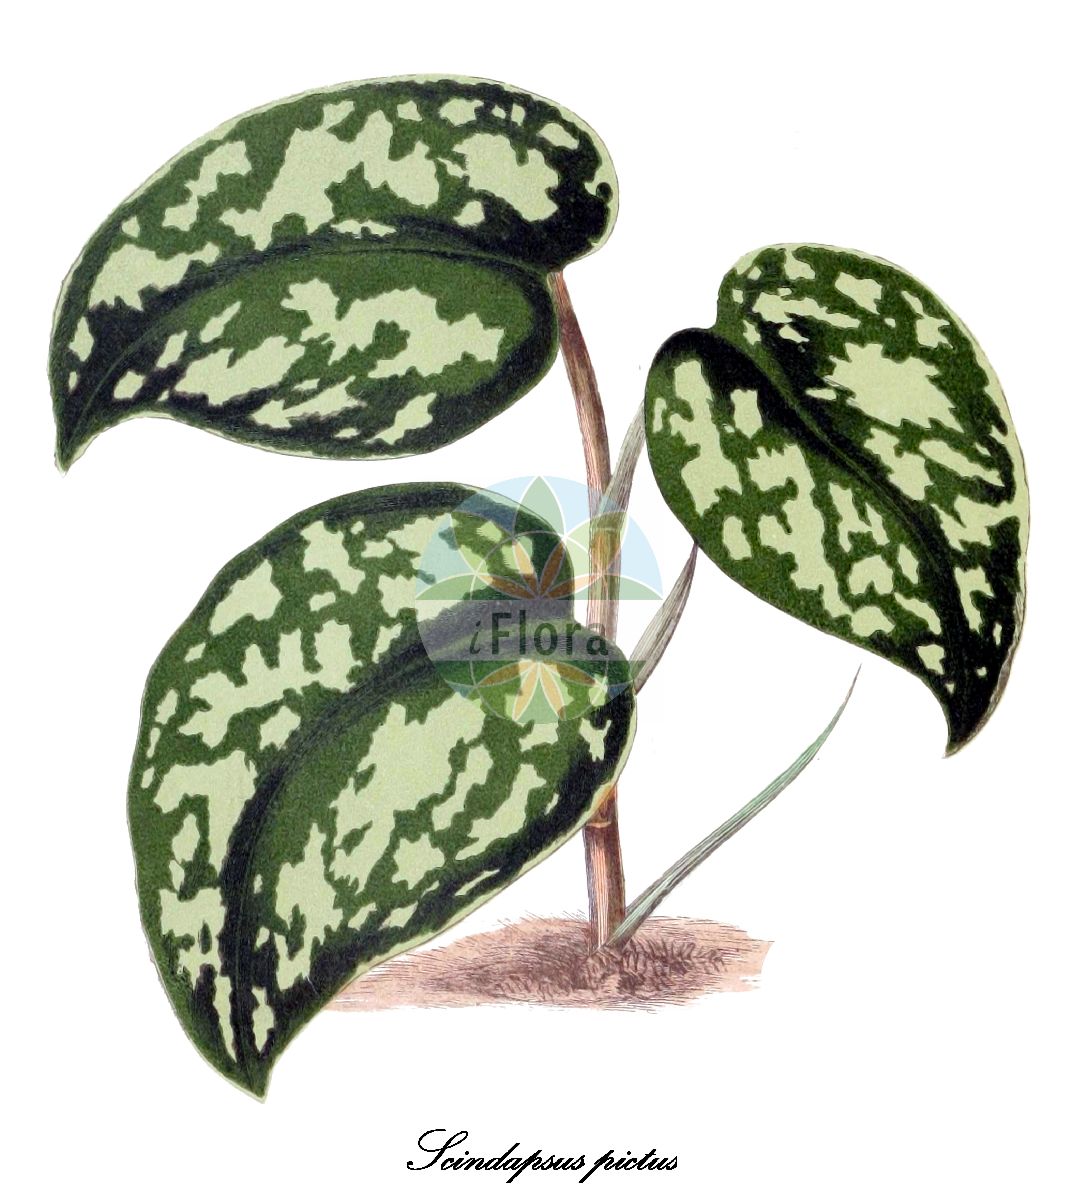 Historische Abbildung von Scindapsus pictus (Efeutute). Das Bild zeigt Blatt, Bluete, Frucht und Same. ---- Historical Drawing of Scindapsus pictus (Efeutute). The image is showing leaf, flower, fruit and seed.(Scindapsus pictus,Efeutute,Scindapsus,Araceae,Aronstabgewächse,Arum Family,Blatt,Bluete,Frucht,Same,leaf,flower,fruit,seed,Rothschild (1867-1870))